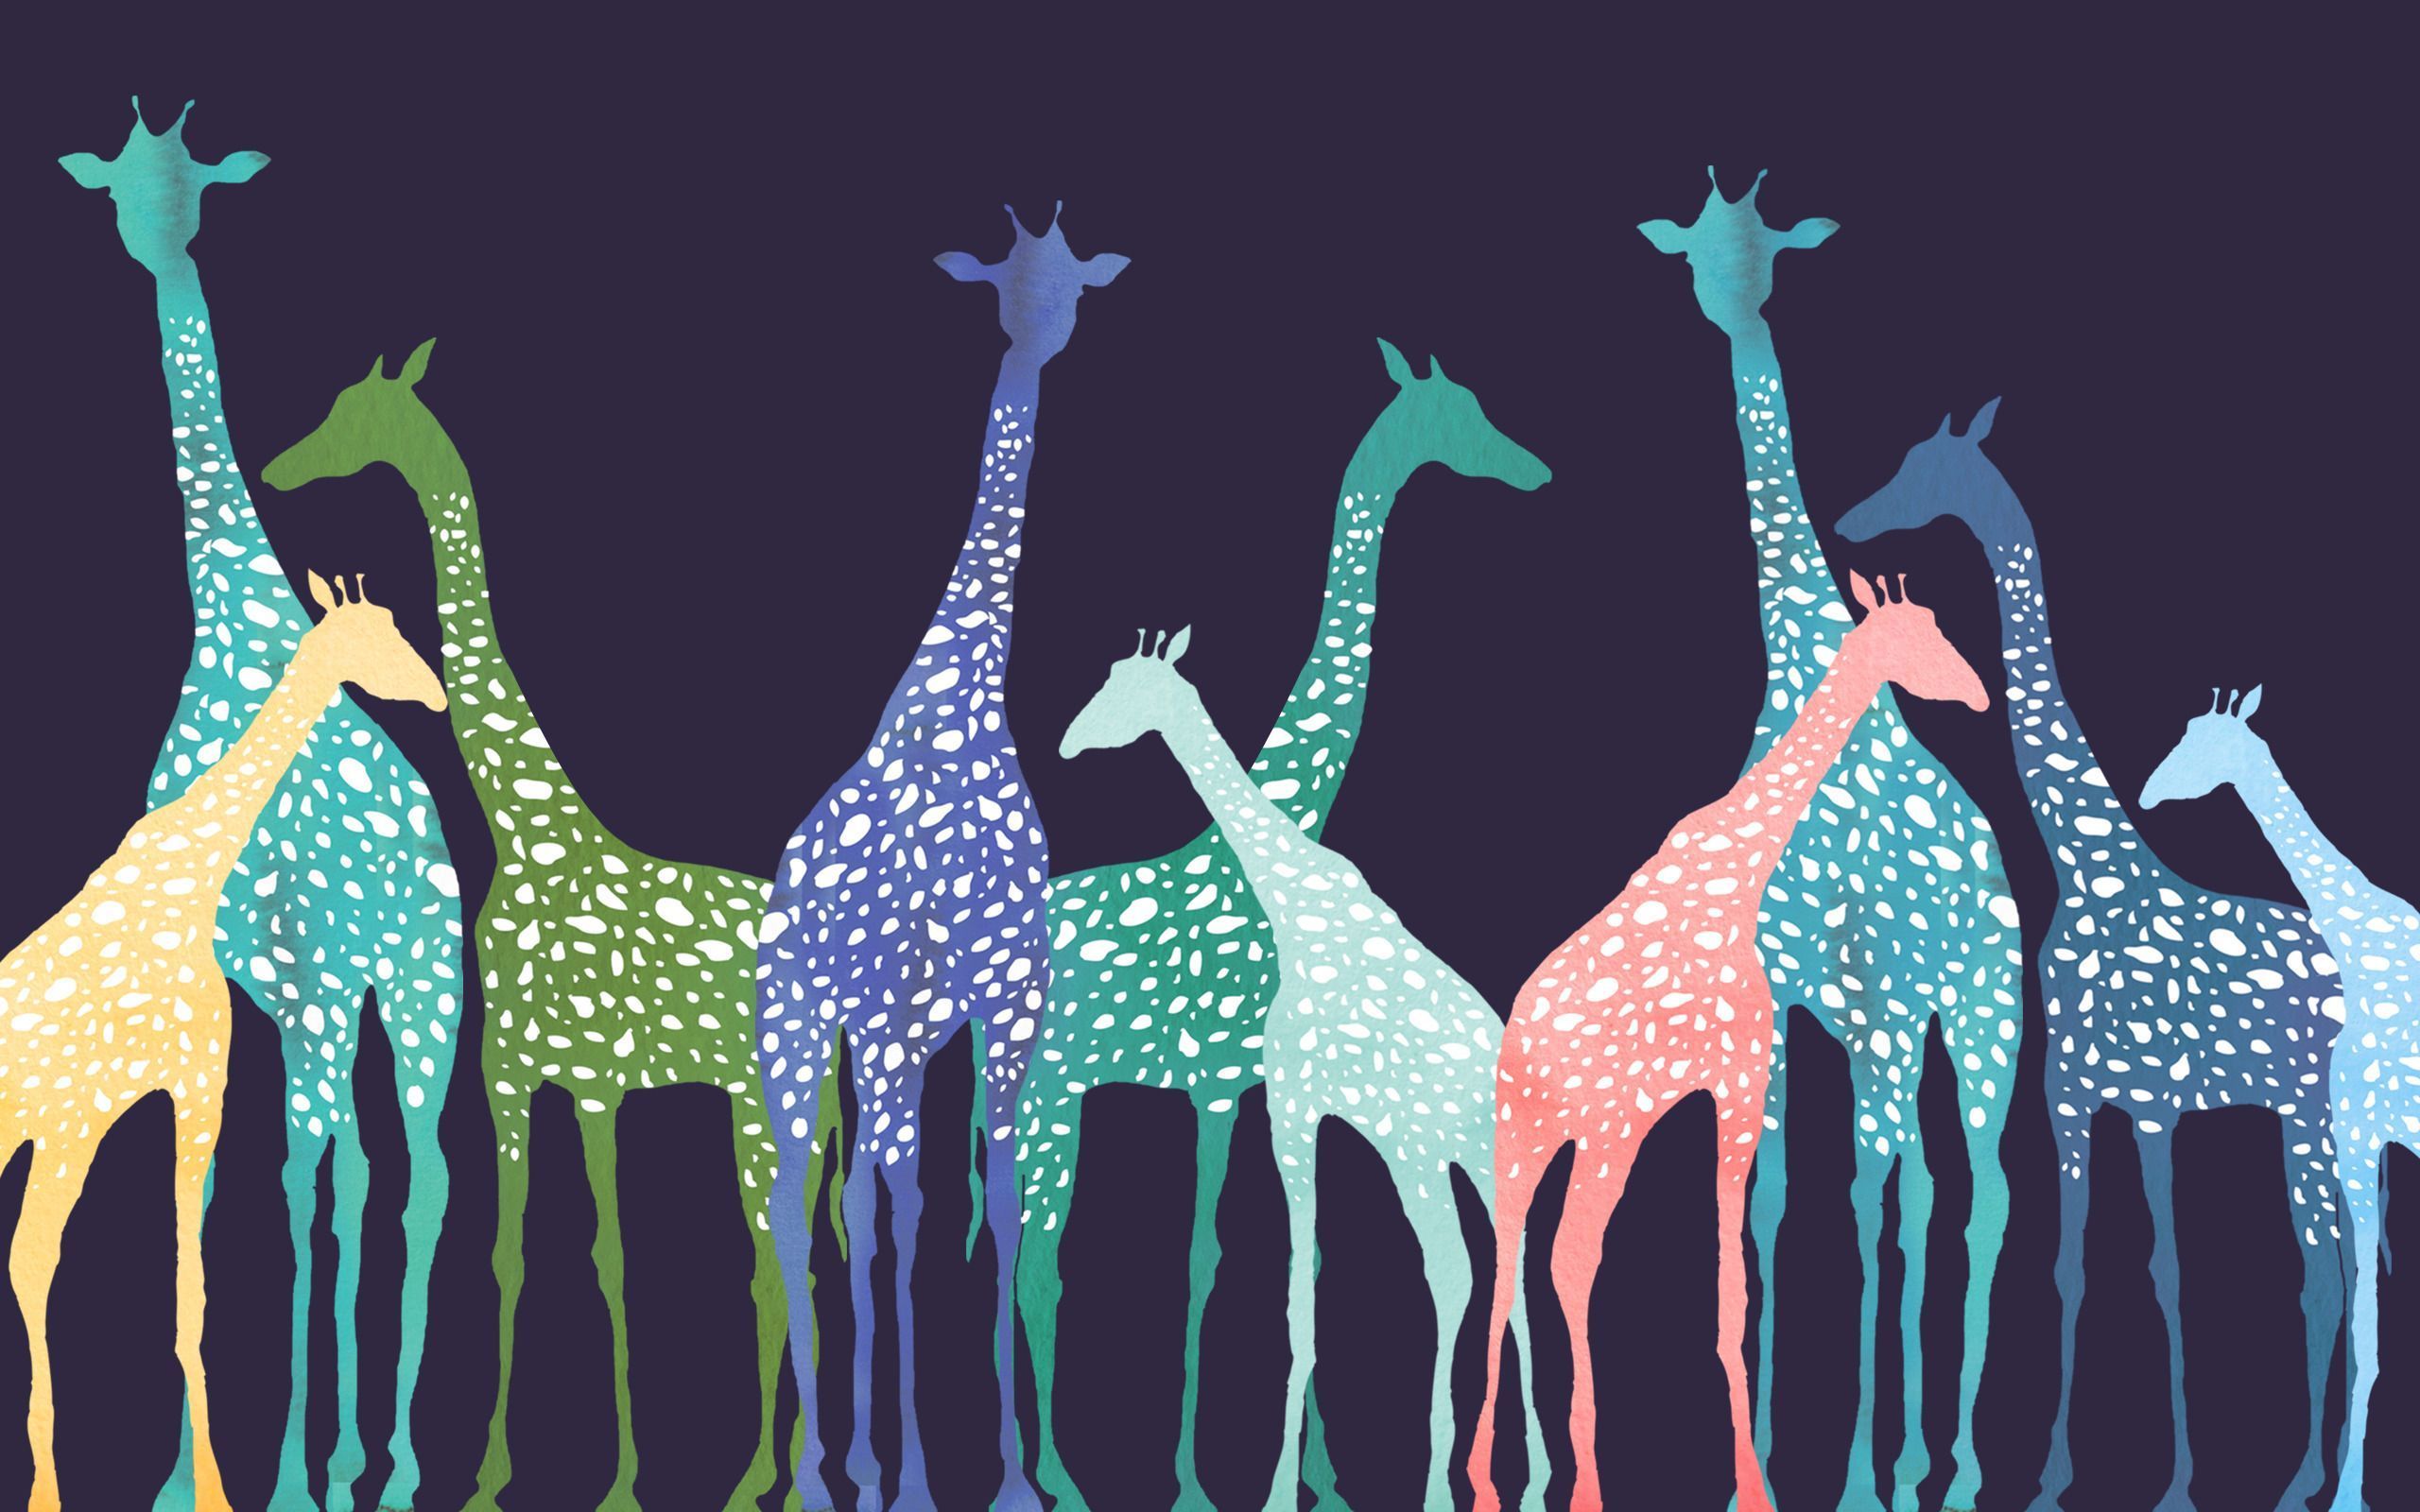  Giraffe Hintergrundbild 2560x1600. Giraffe Art Wallpaper Free Giraffe Art Background